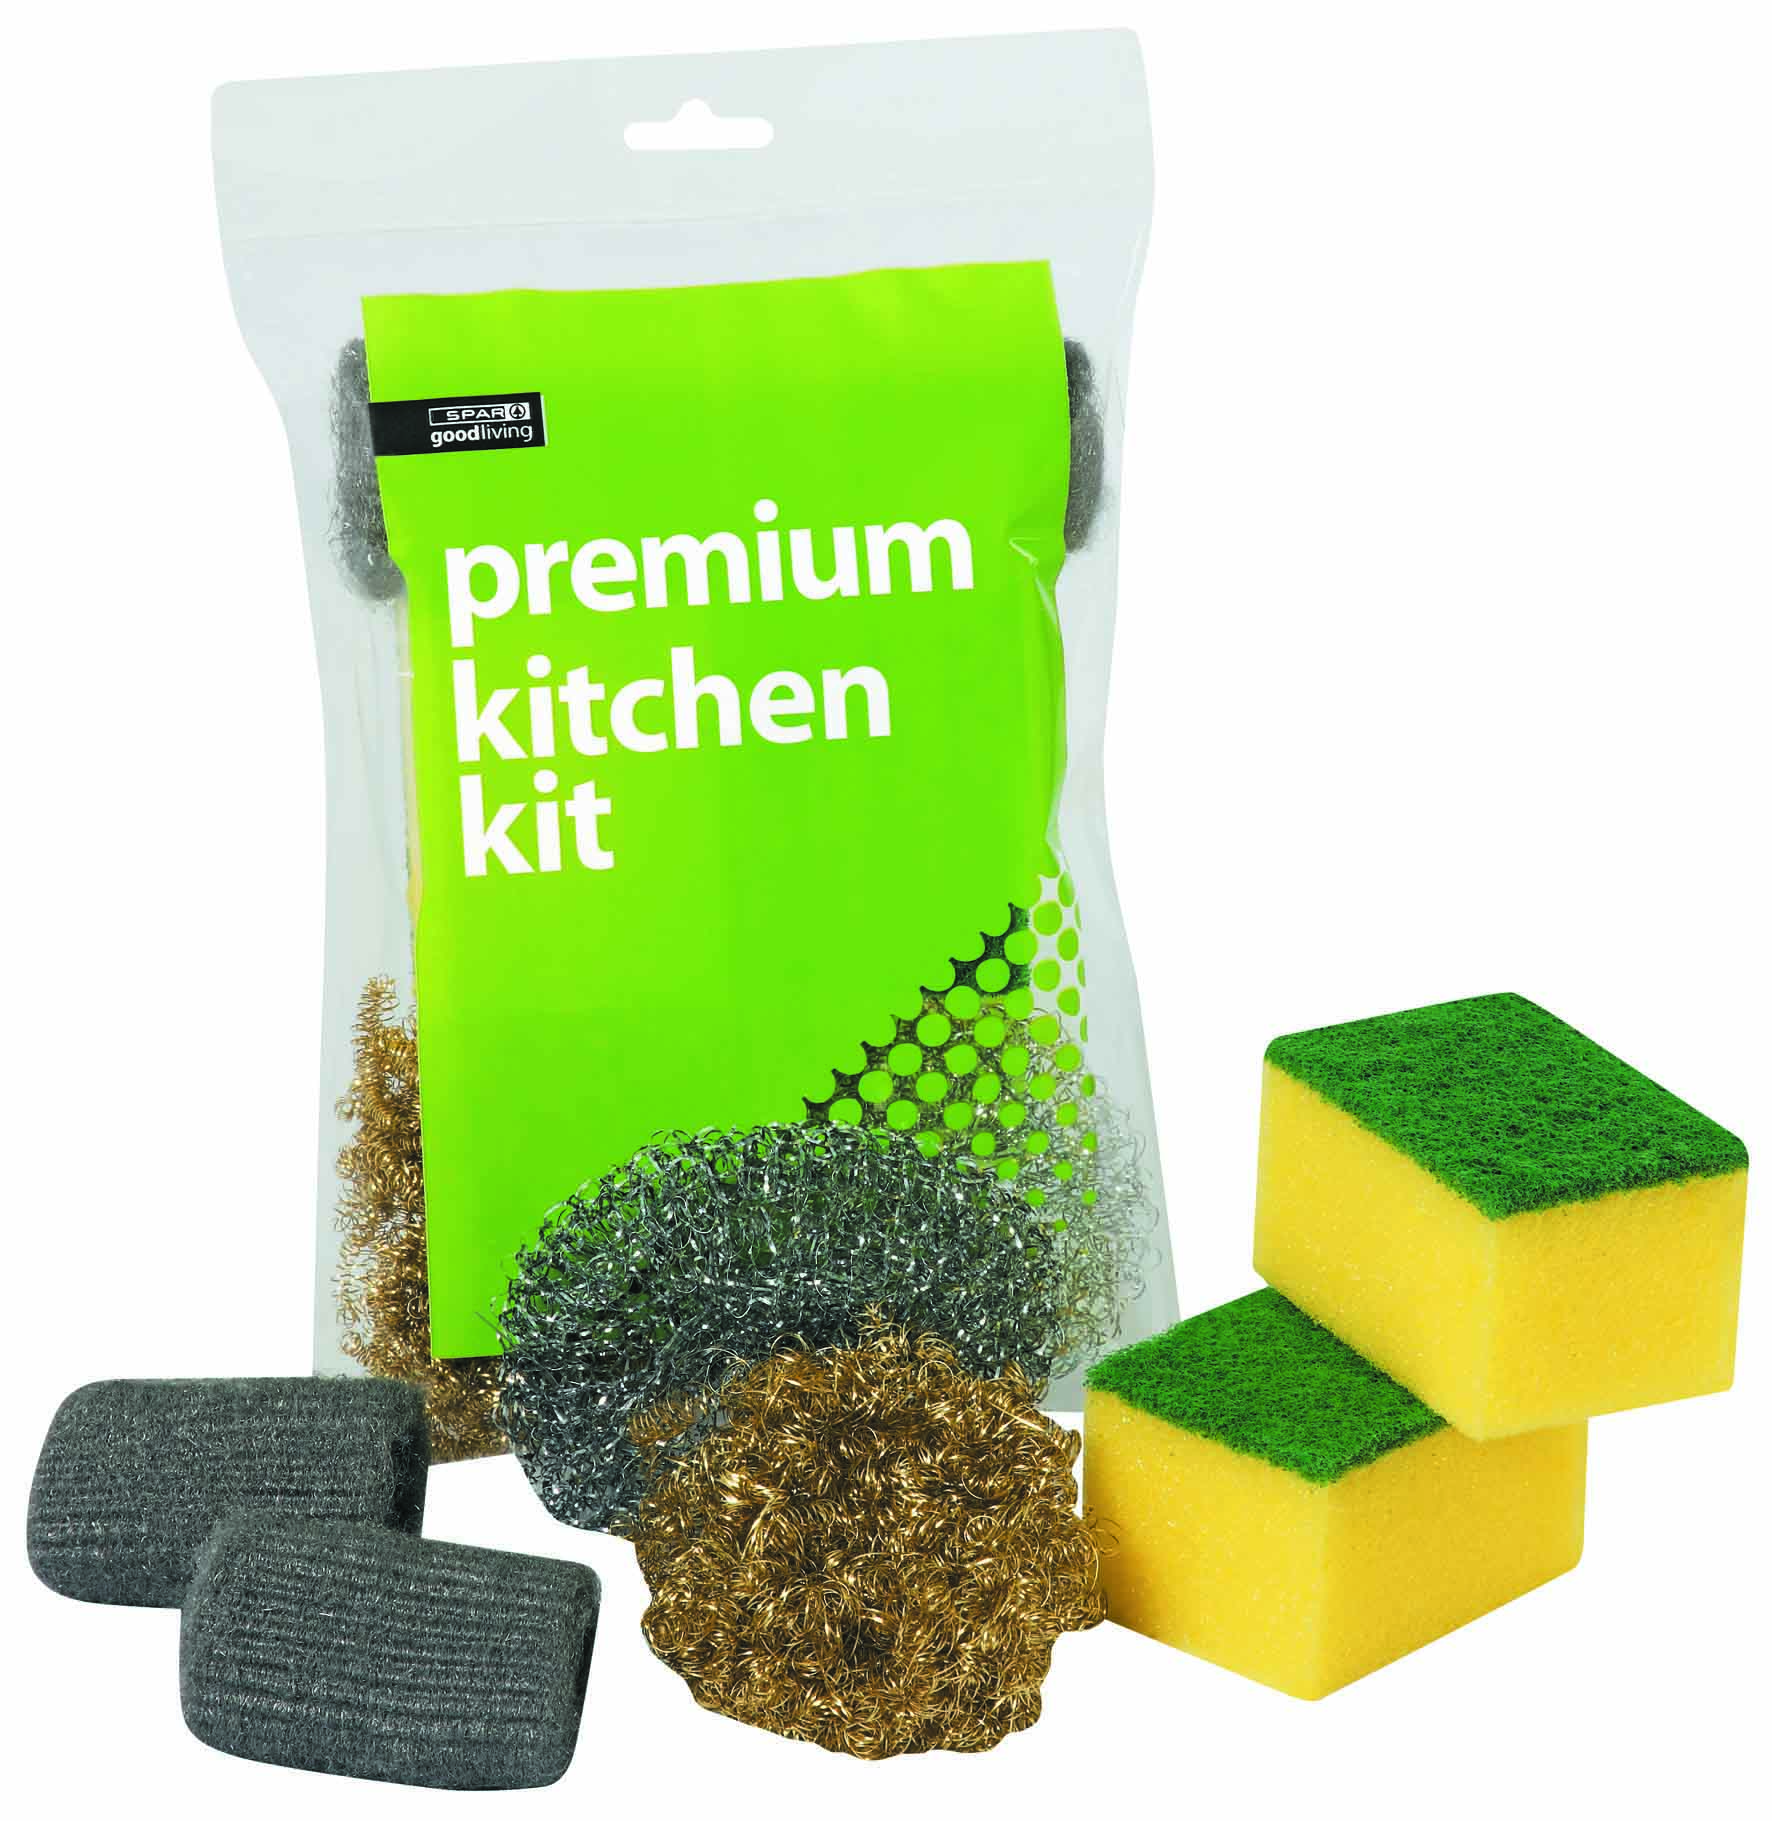 kitchen kit - premium